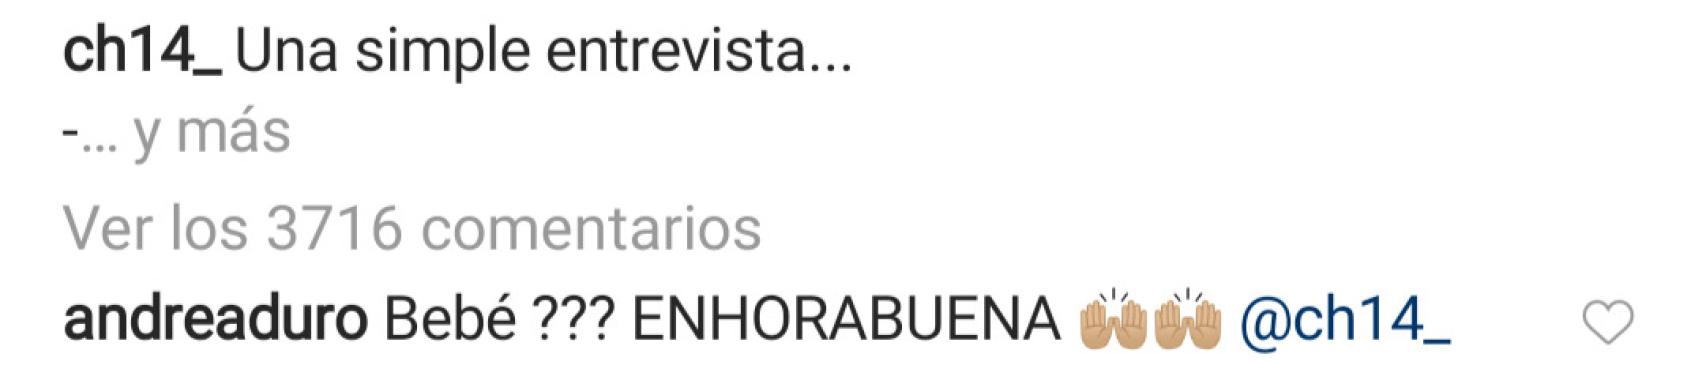 Comentario en el Instagram de Chicharito